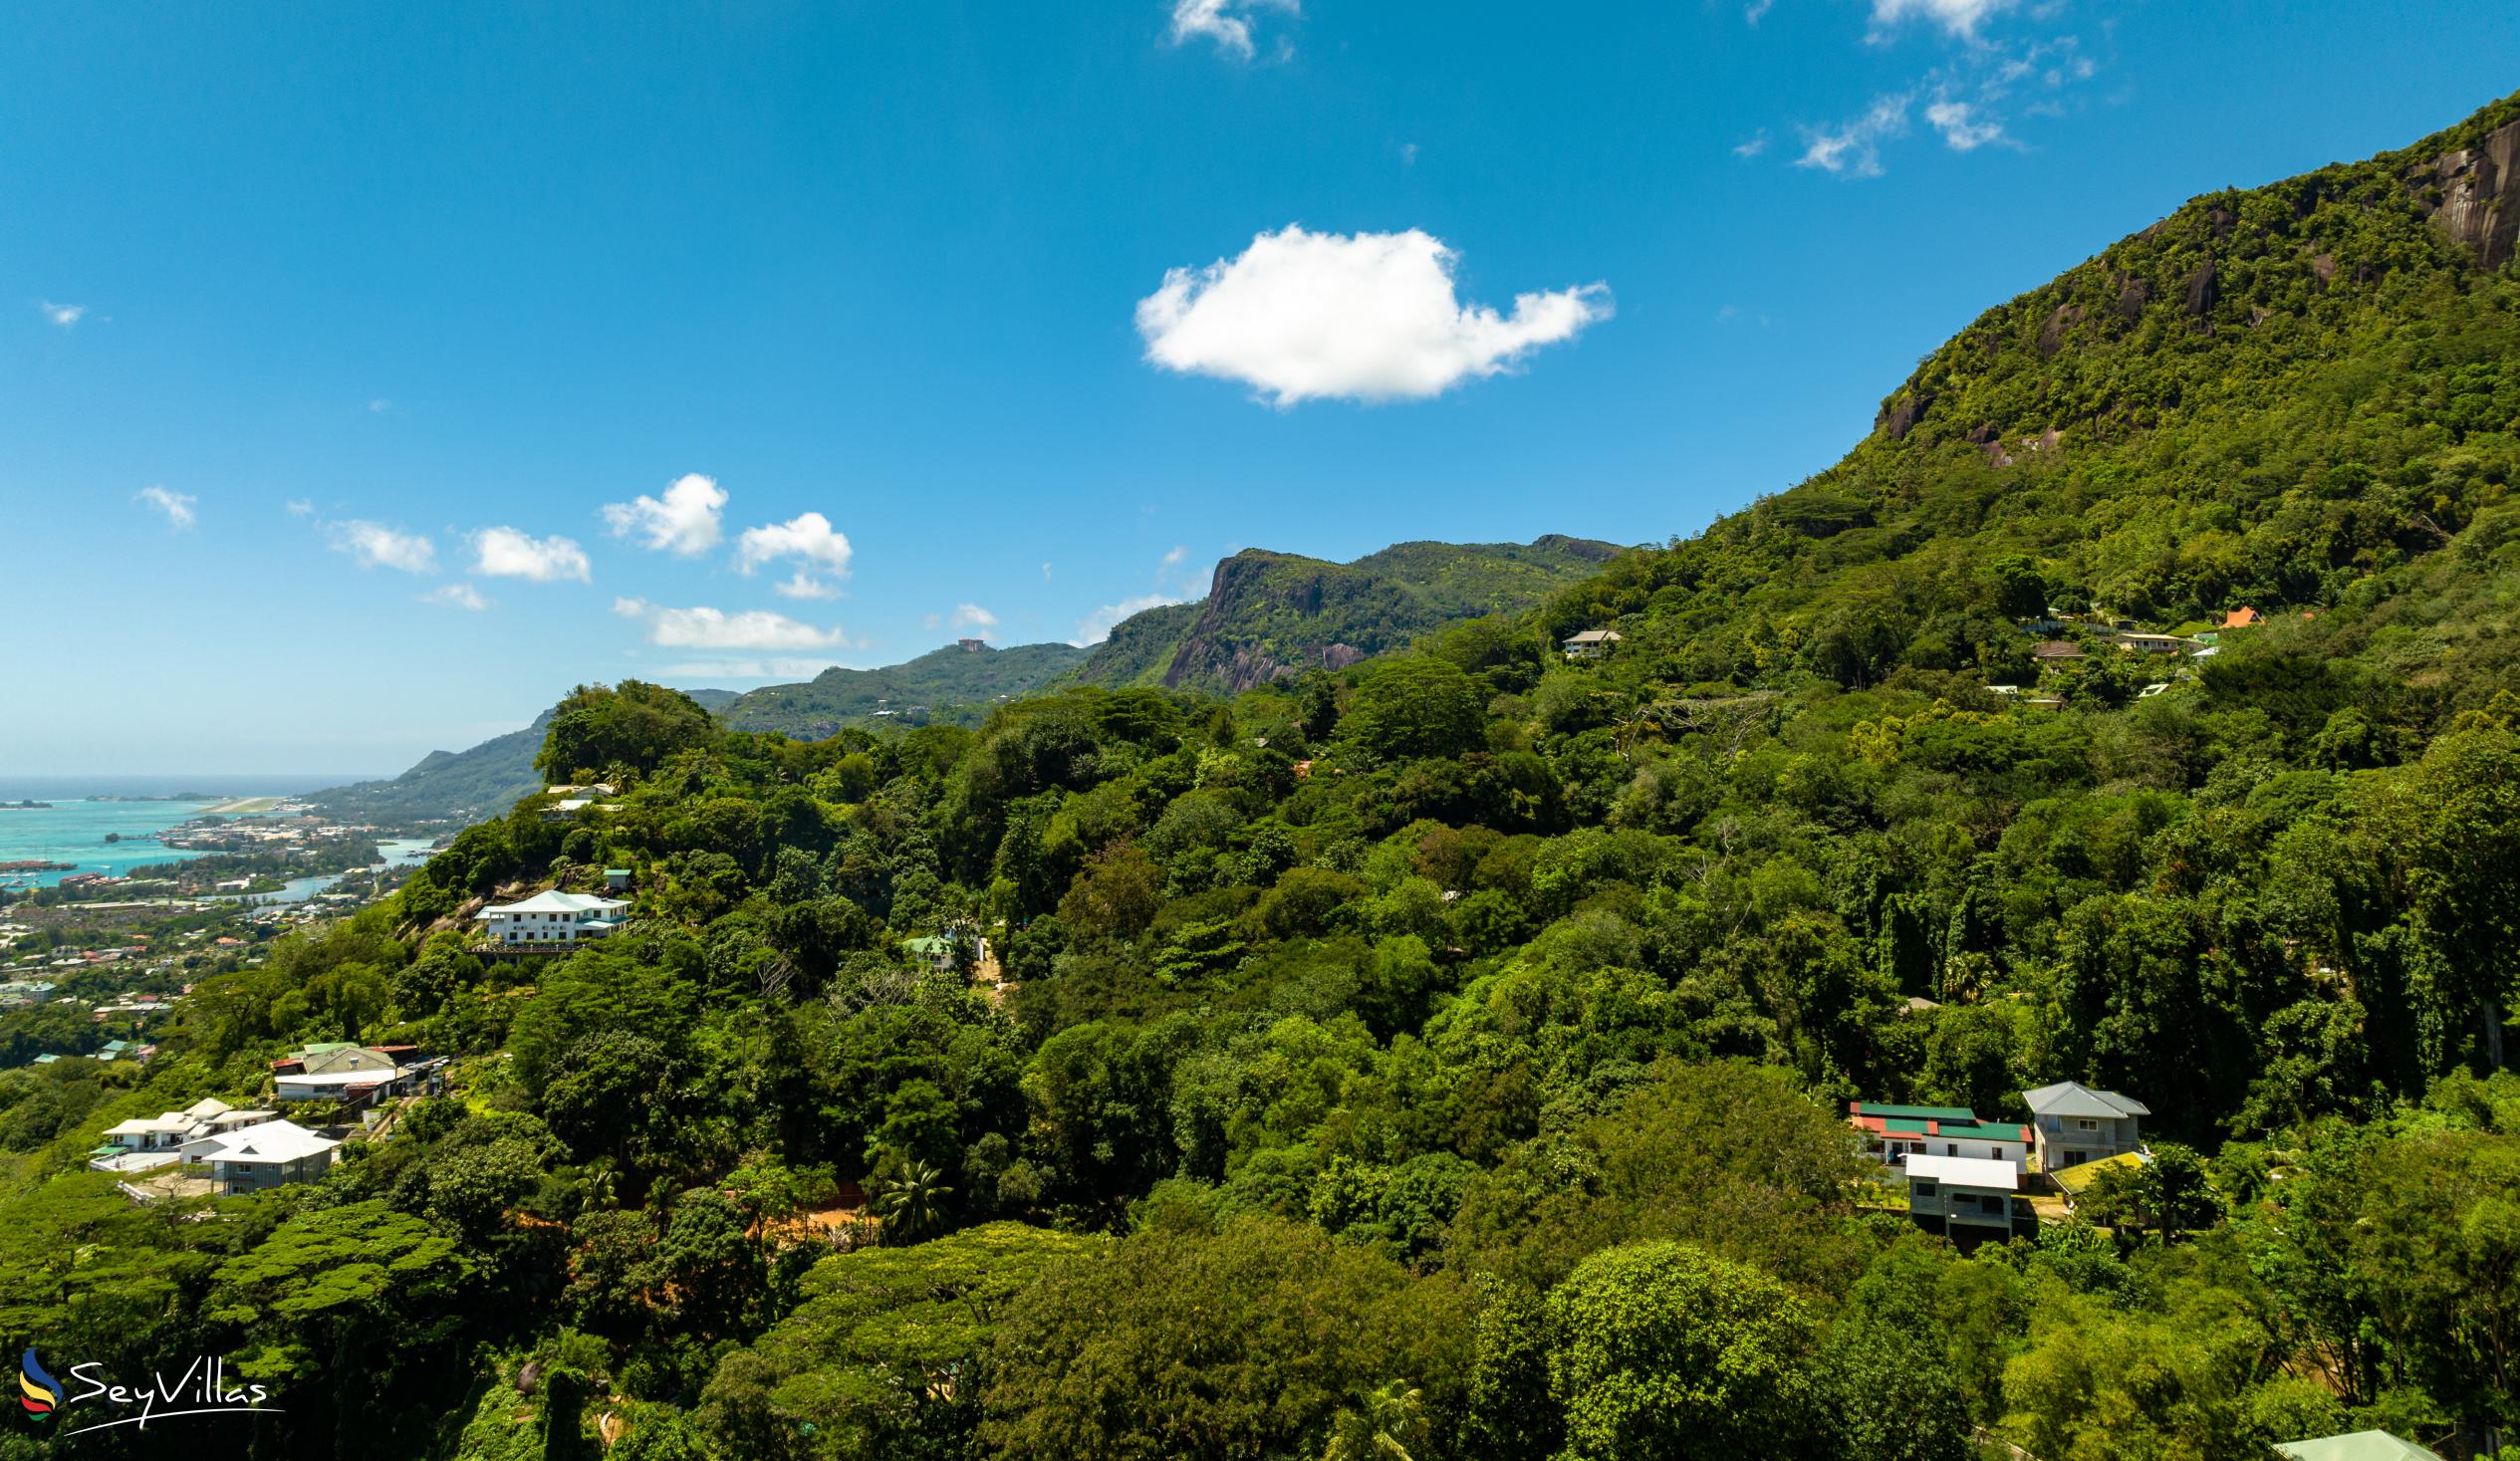 Foto 36: Beau Sejour Hotel - Lage - Mahé (Seychellen)